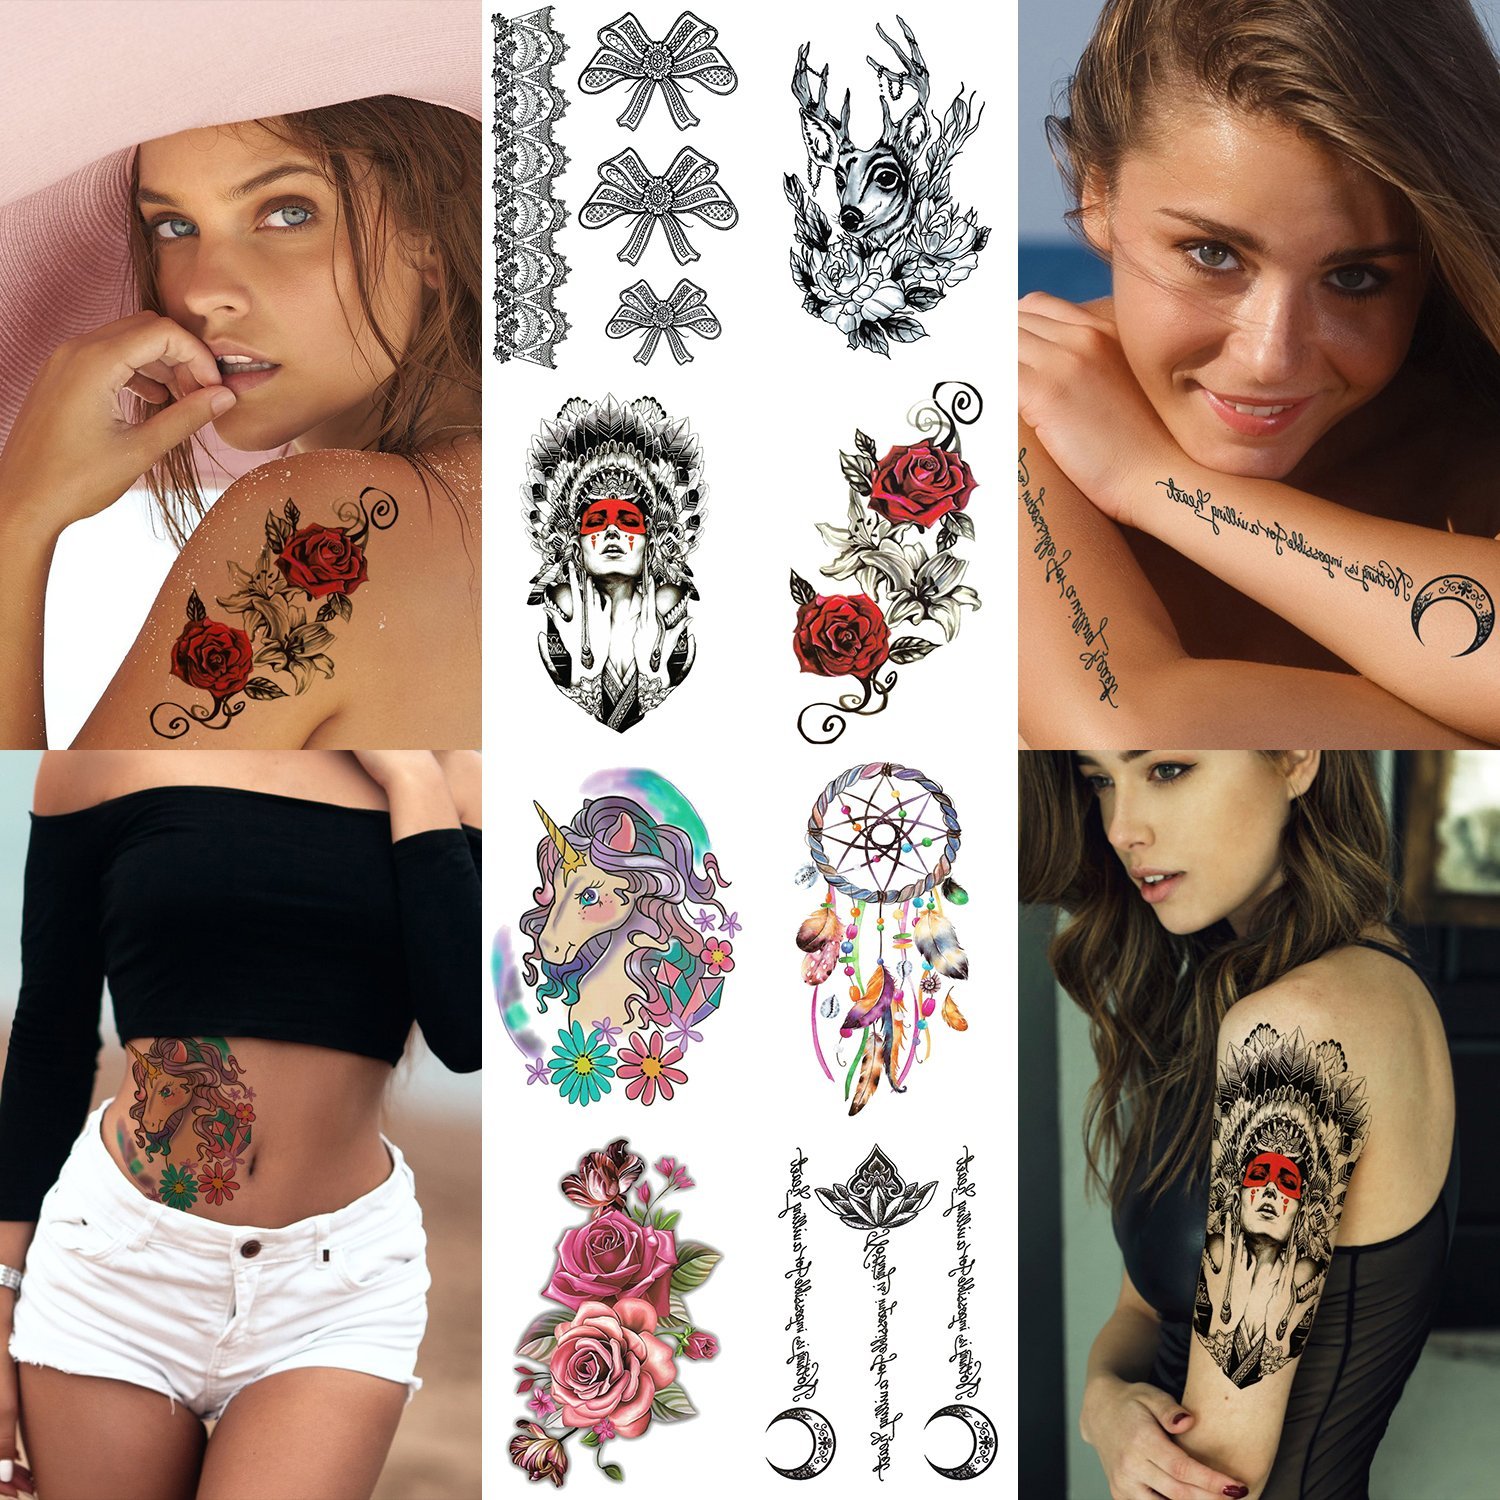 Самые красивые варианты татуировок для девушек во всем мире: какие имеют свой глубокий смысл